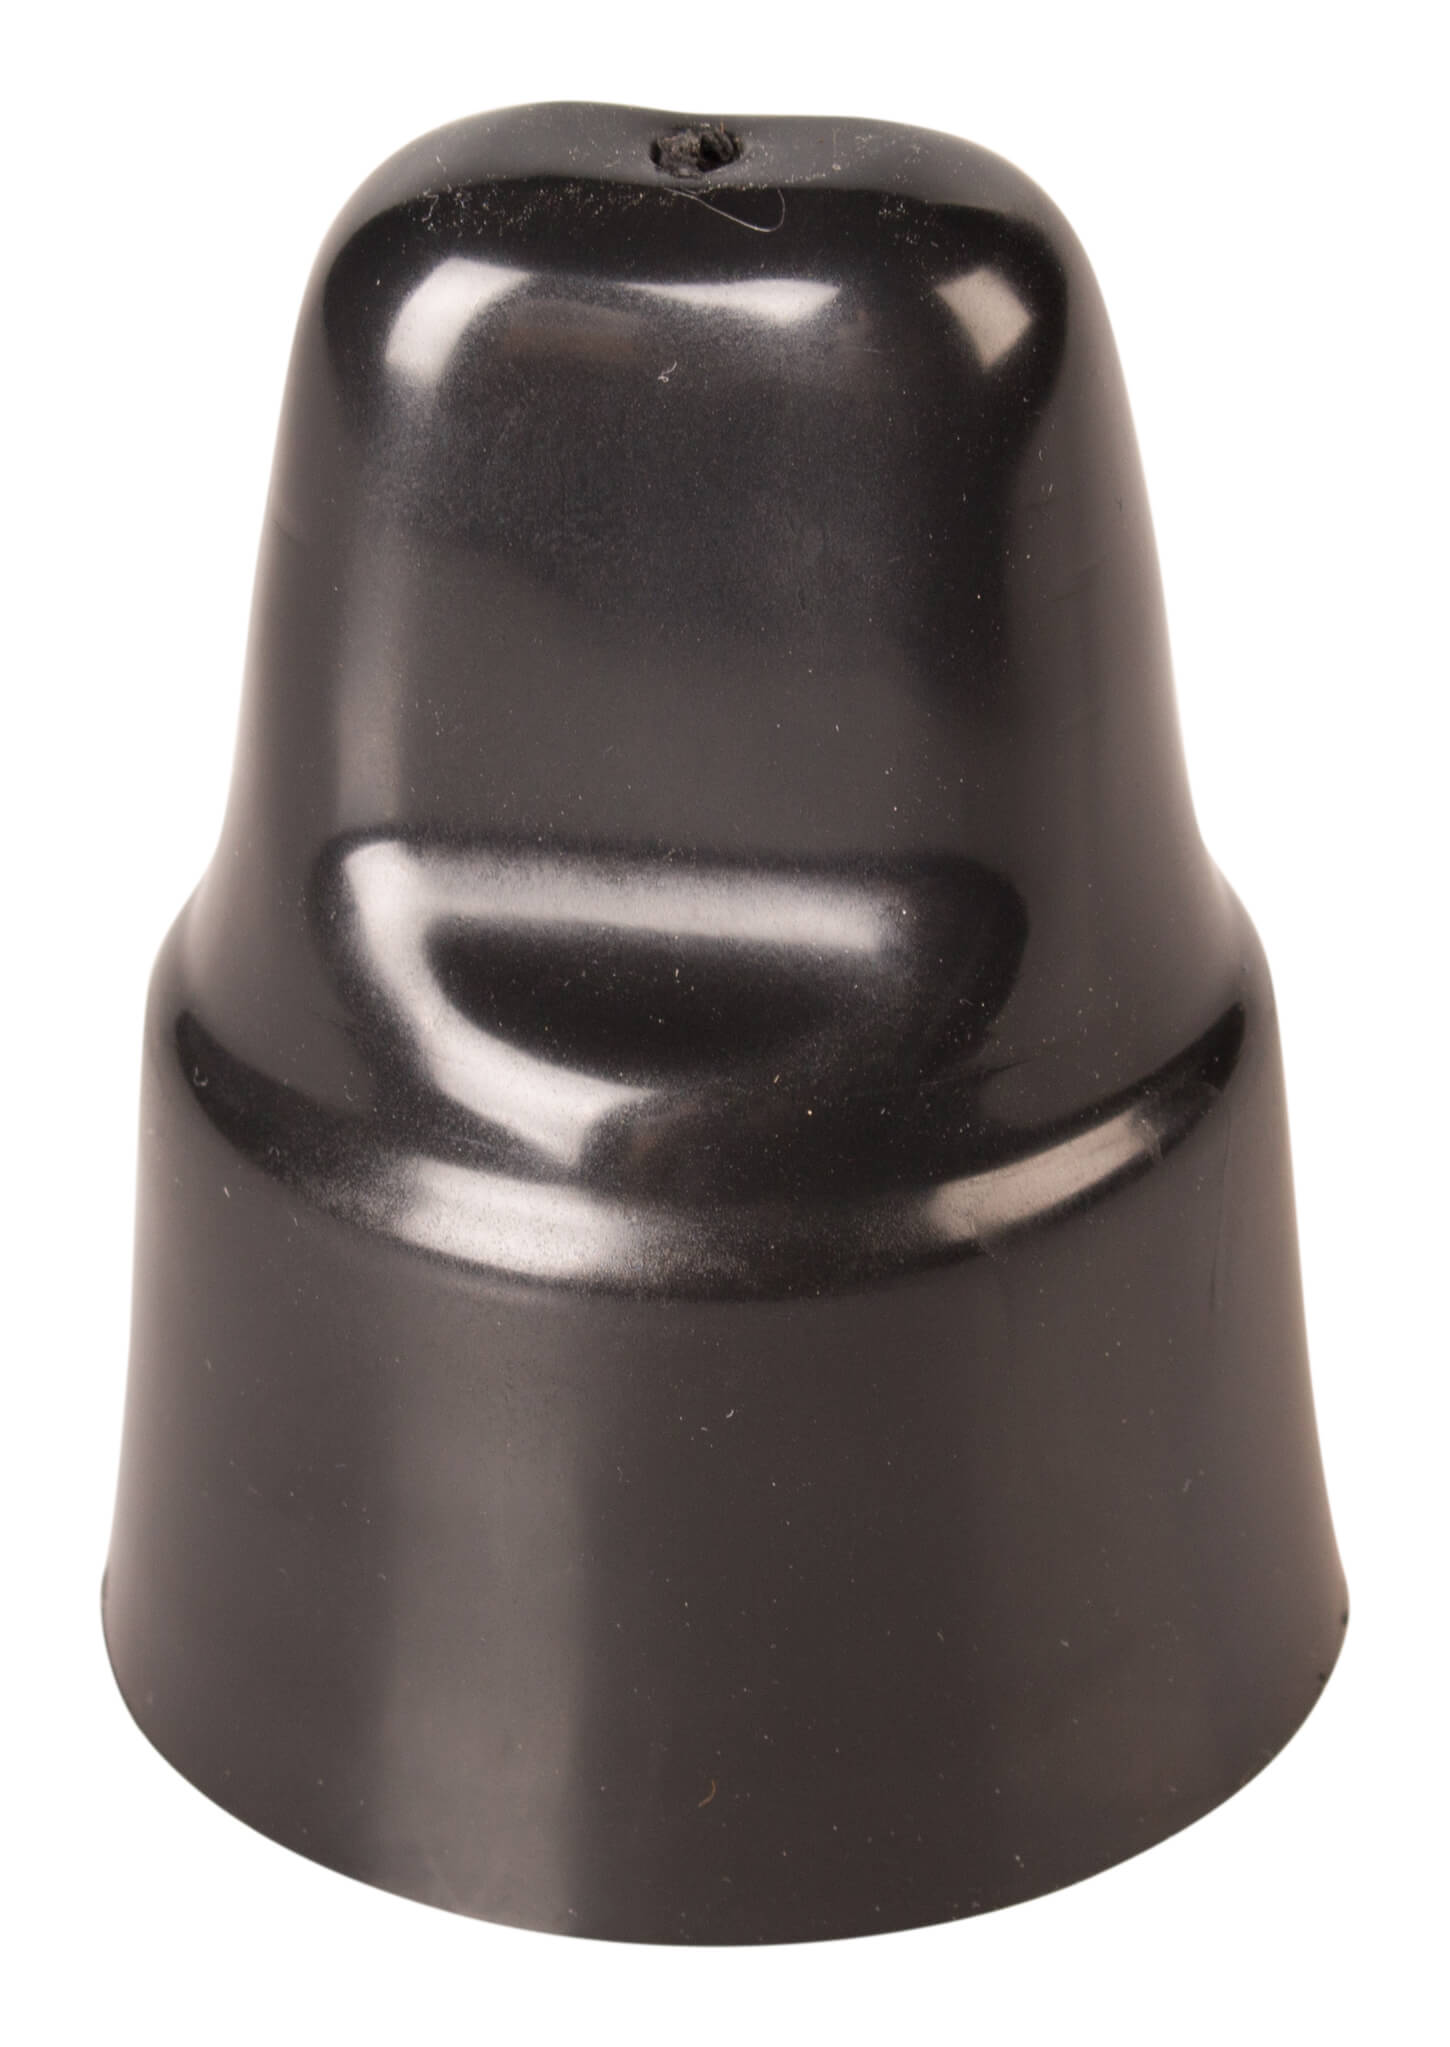 Dust cap "Jet" for permanent-pourer (4,7cm)